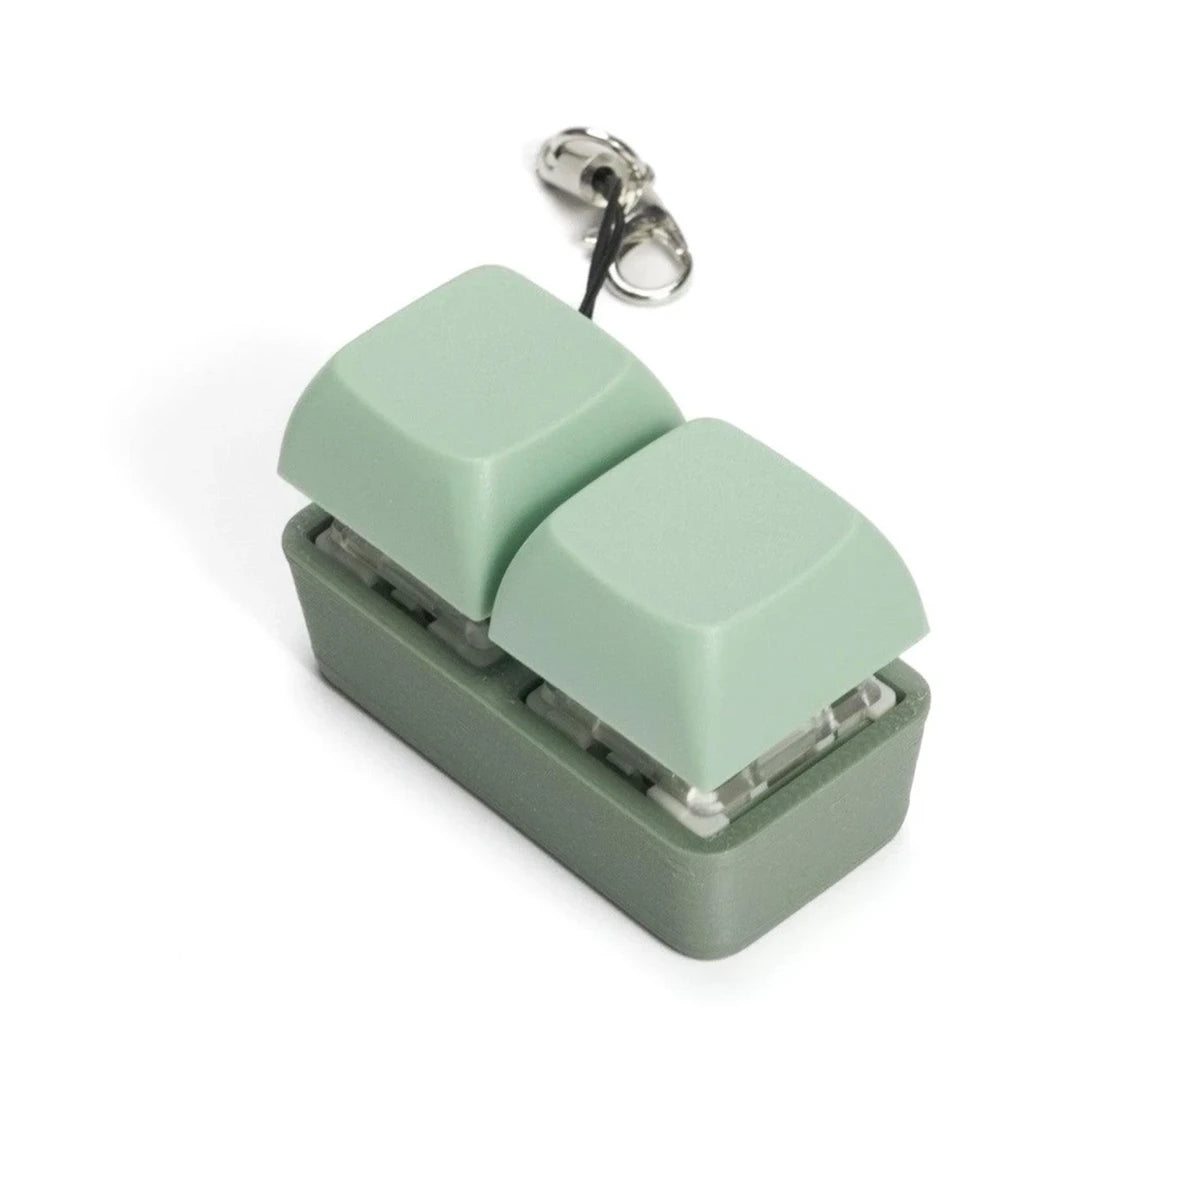 Strudel 3D 2 Key Fidget Keychain - Two-Tone Series - Green